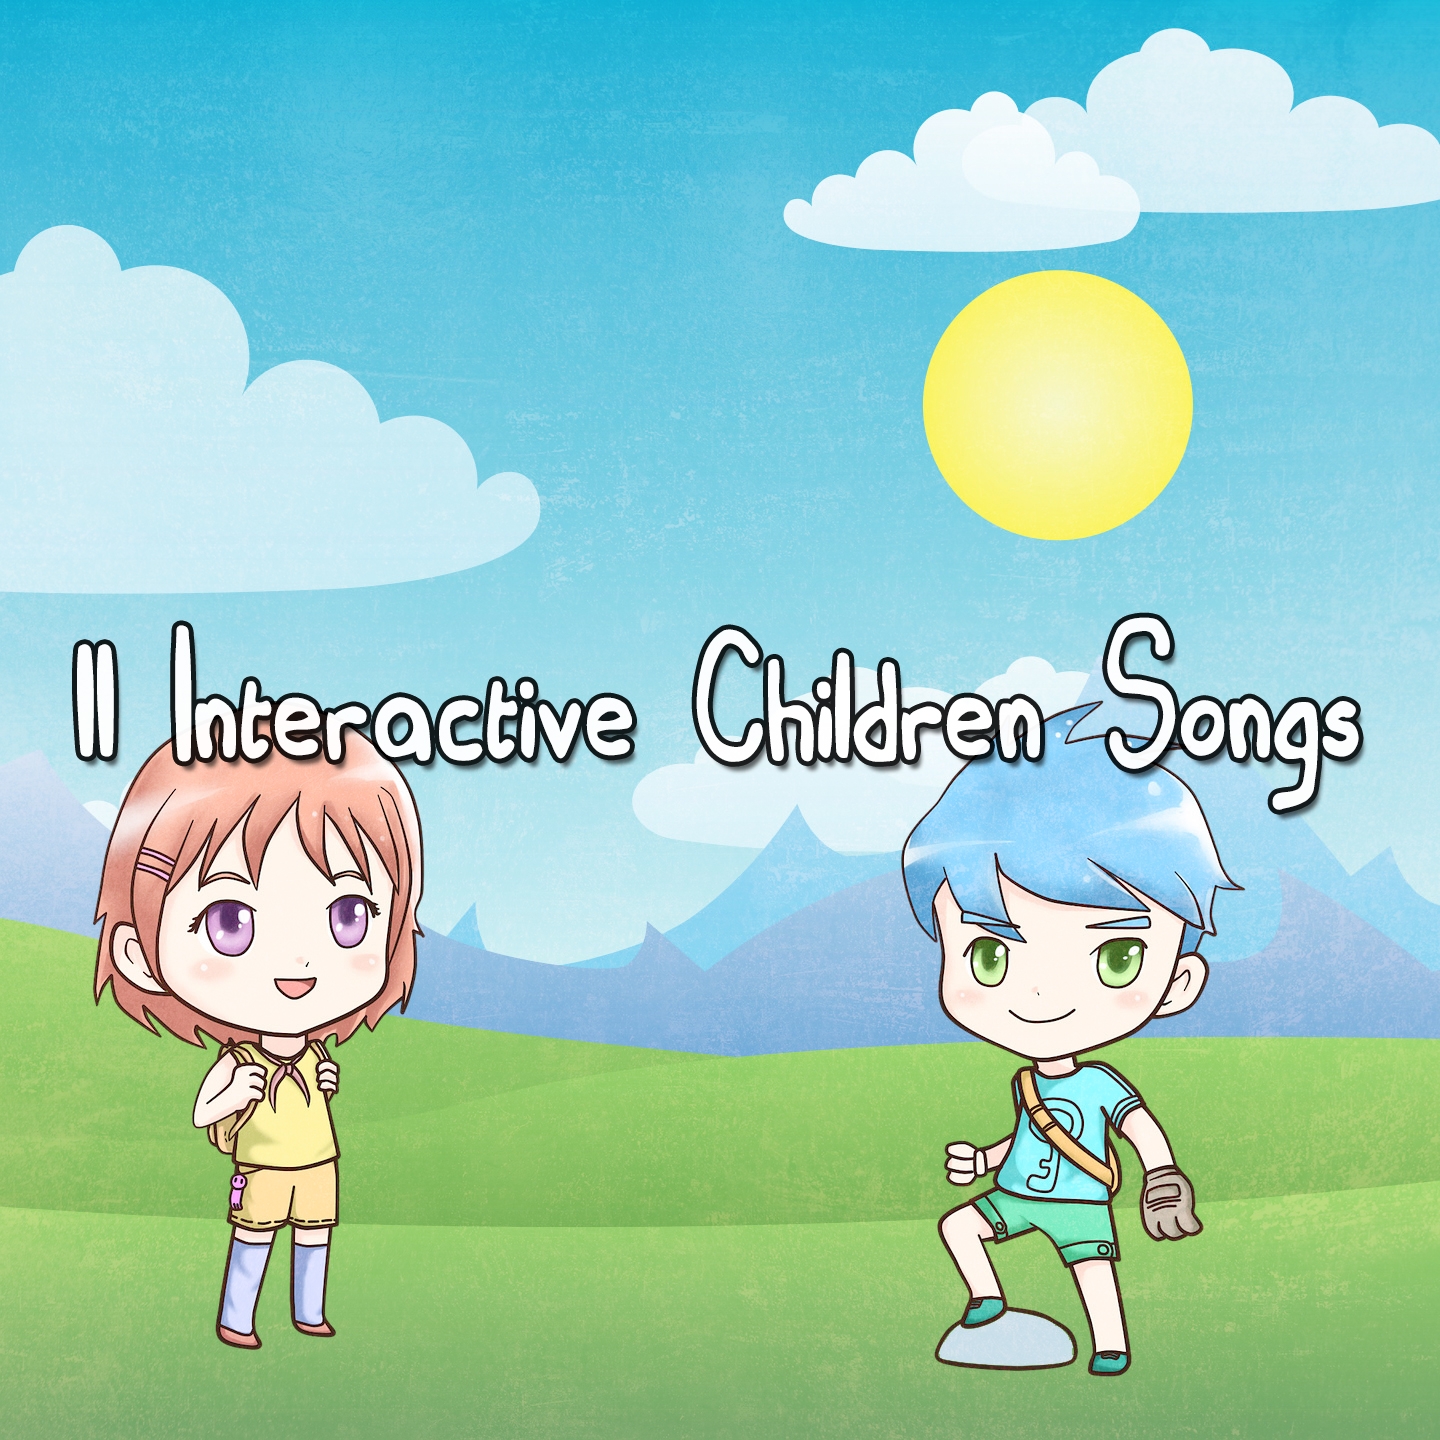 11 Interactive Children Songs